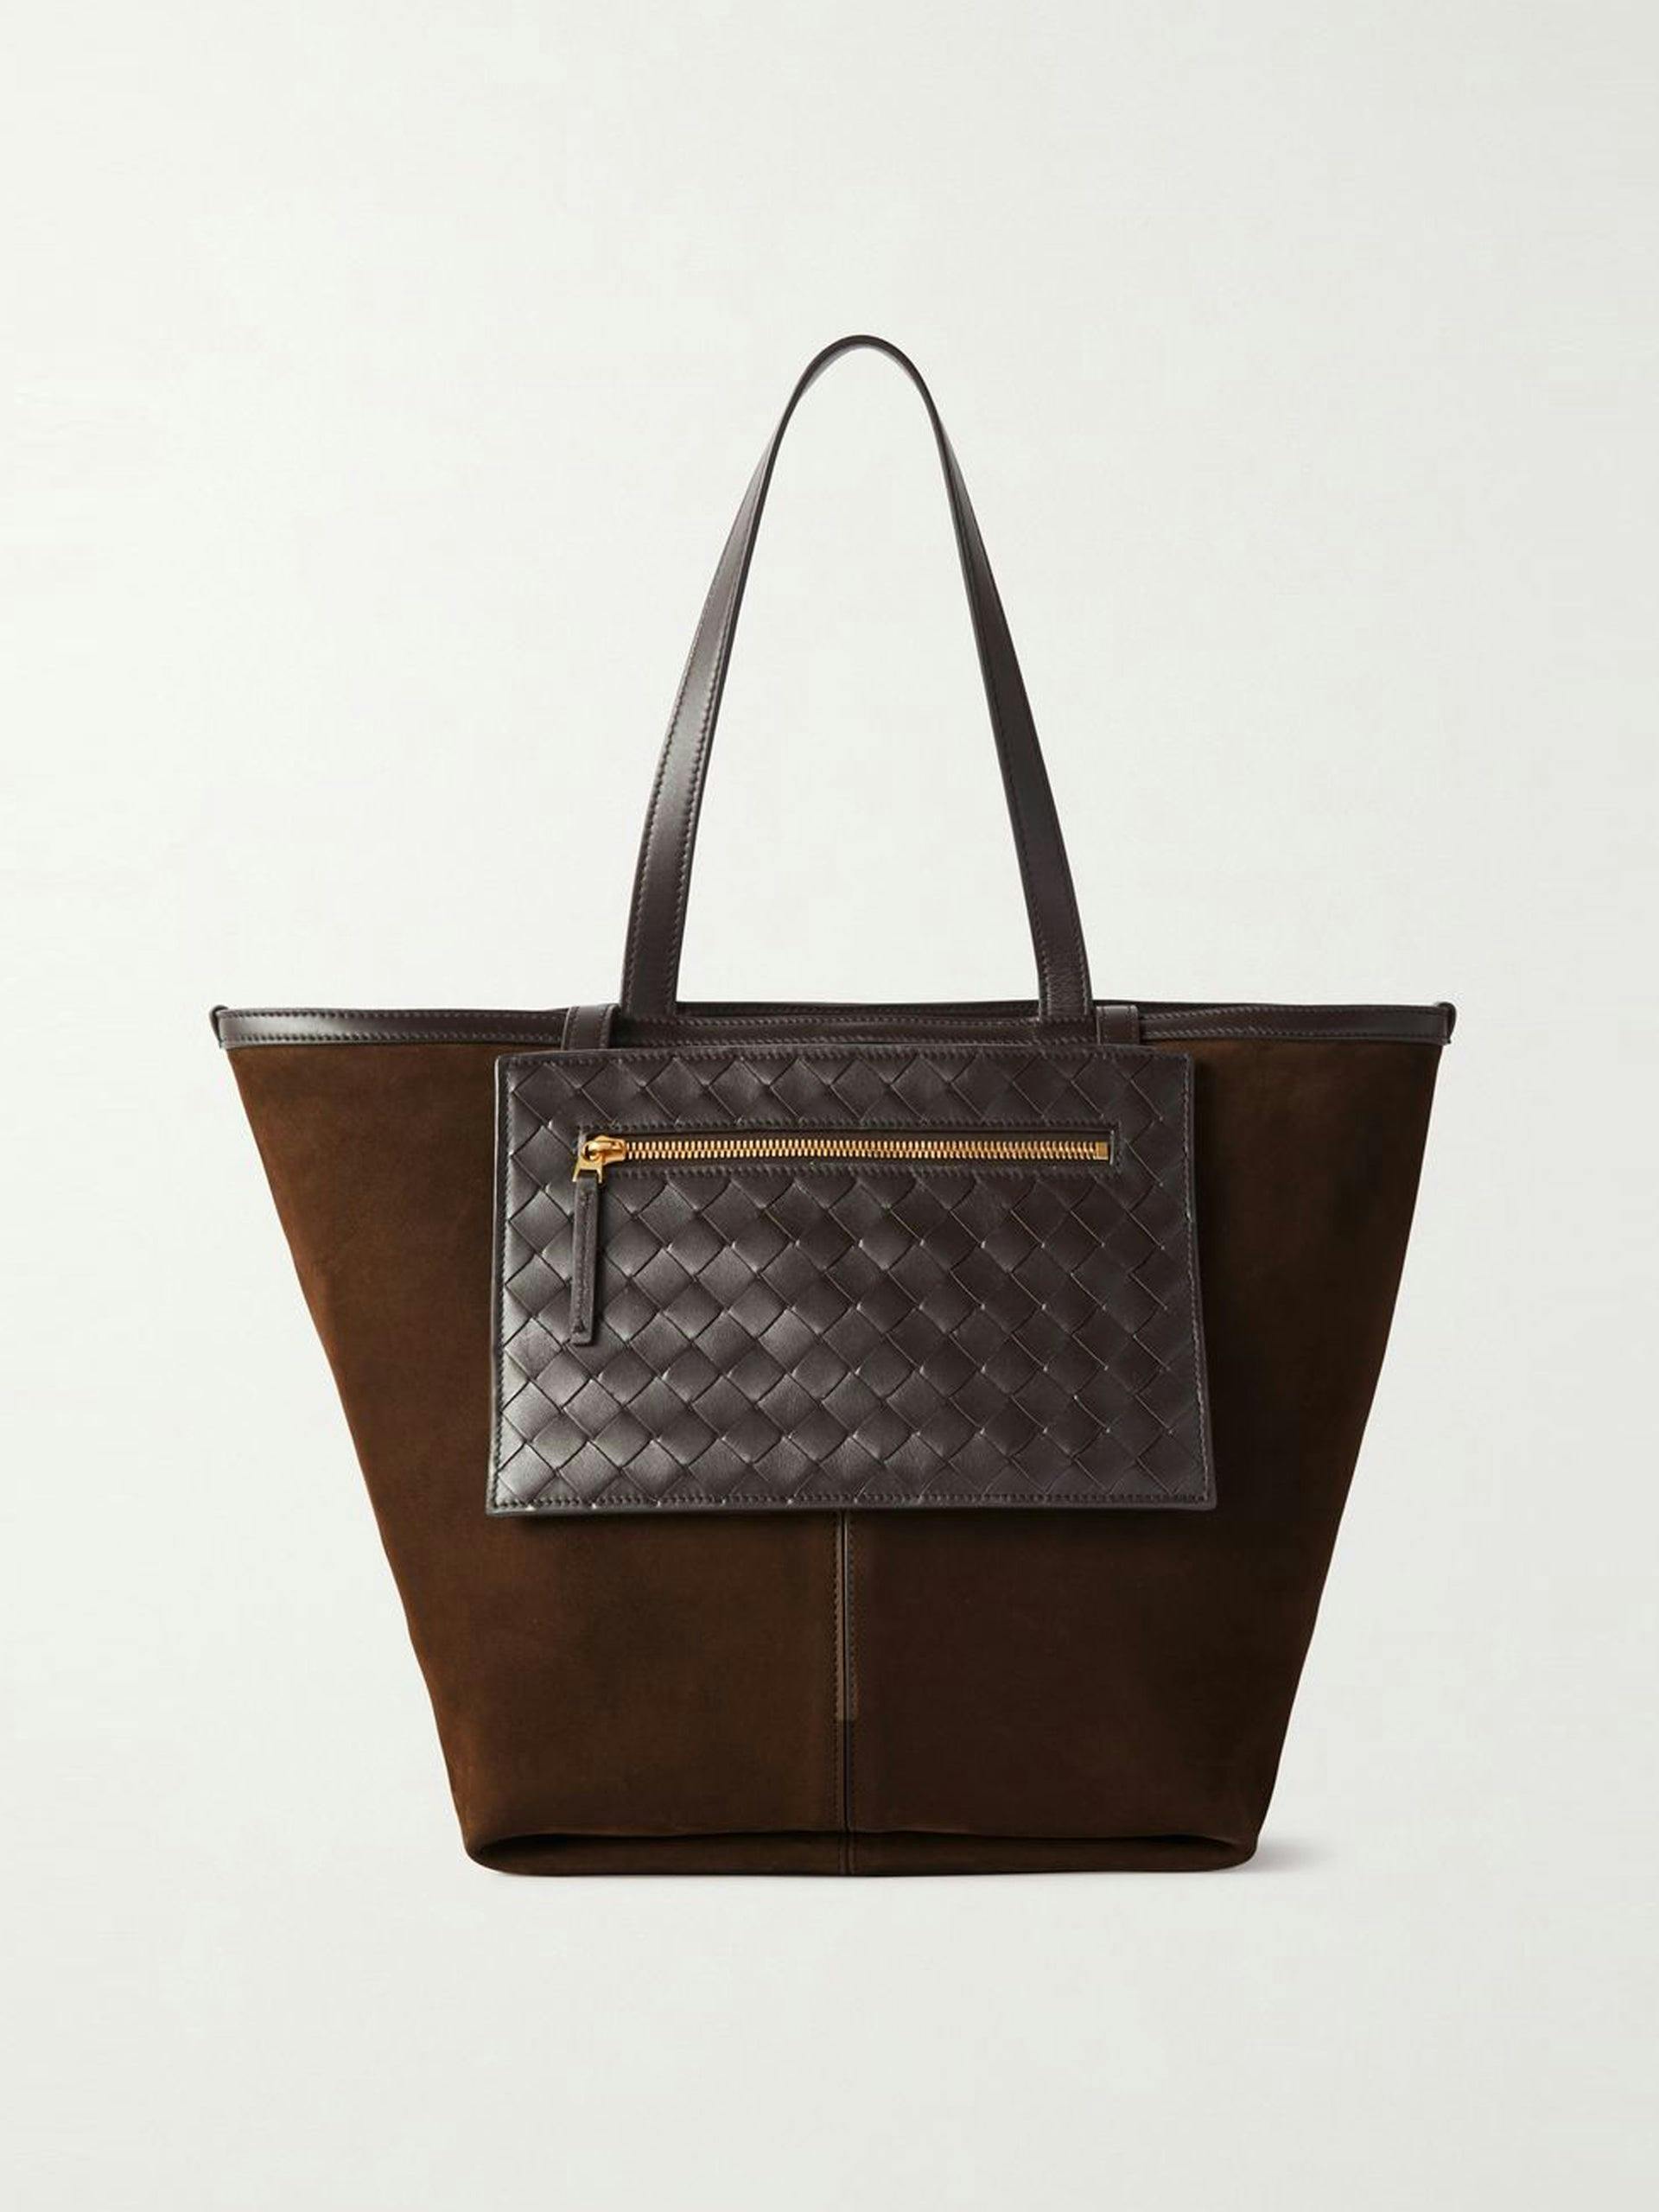 Brown suede and intrecciato leather shoulder bag